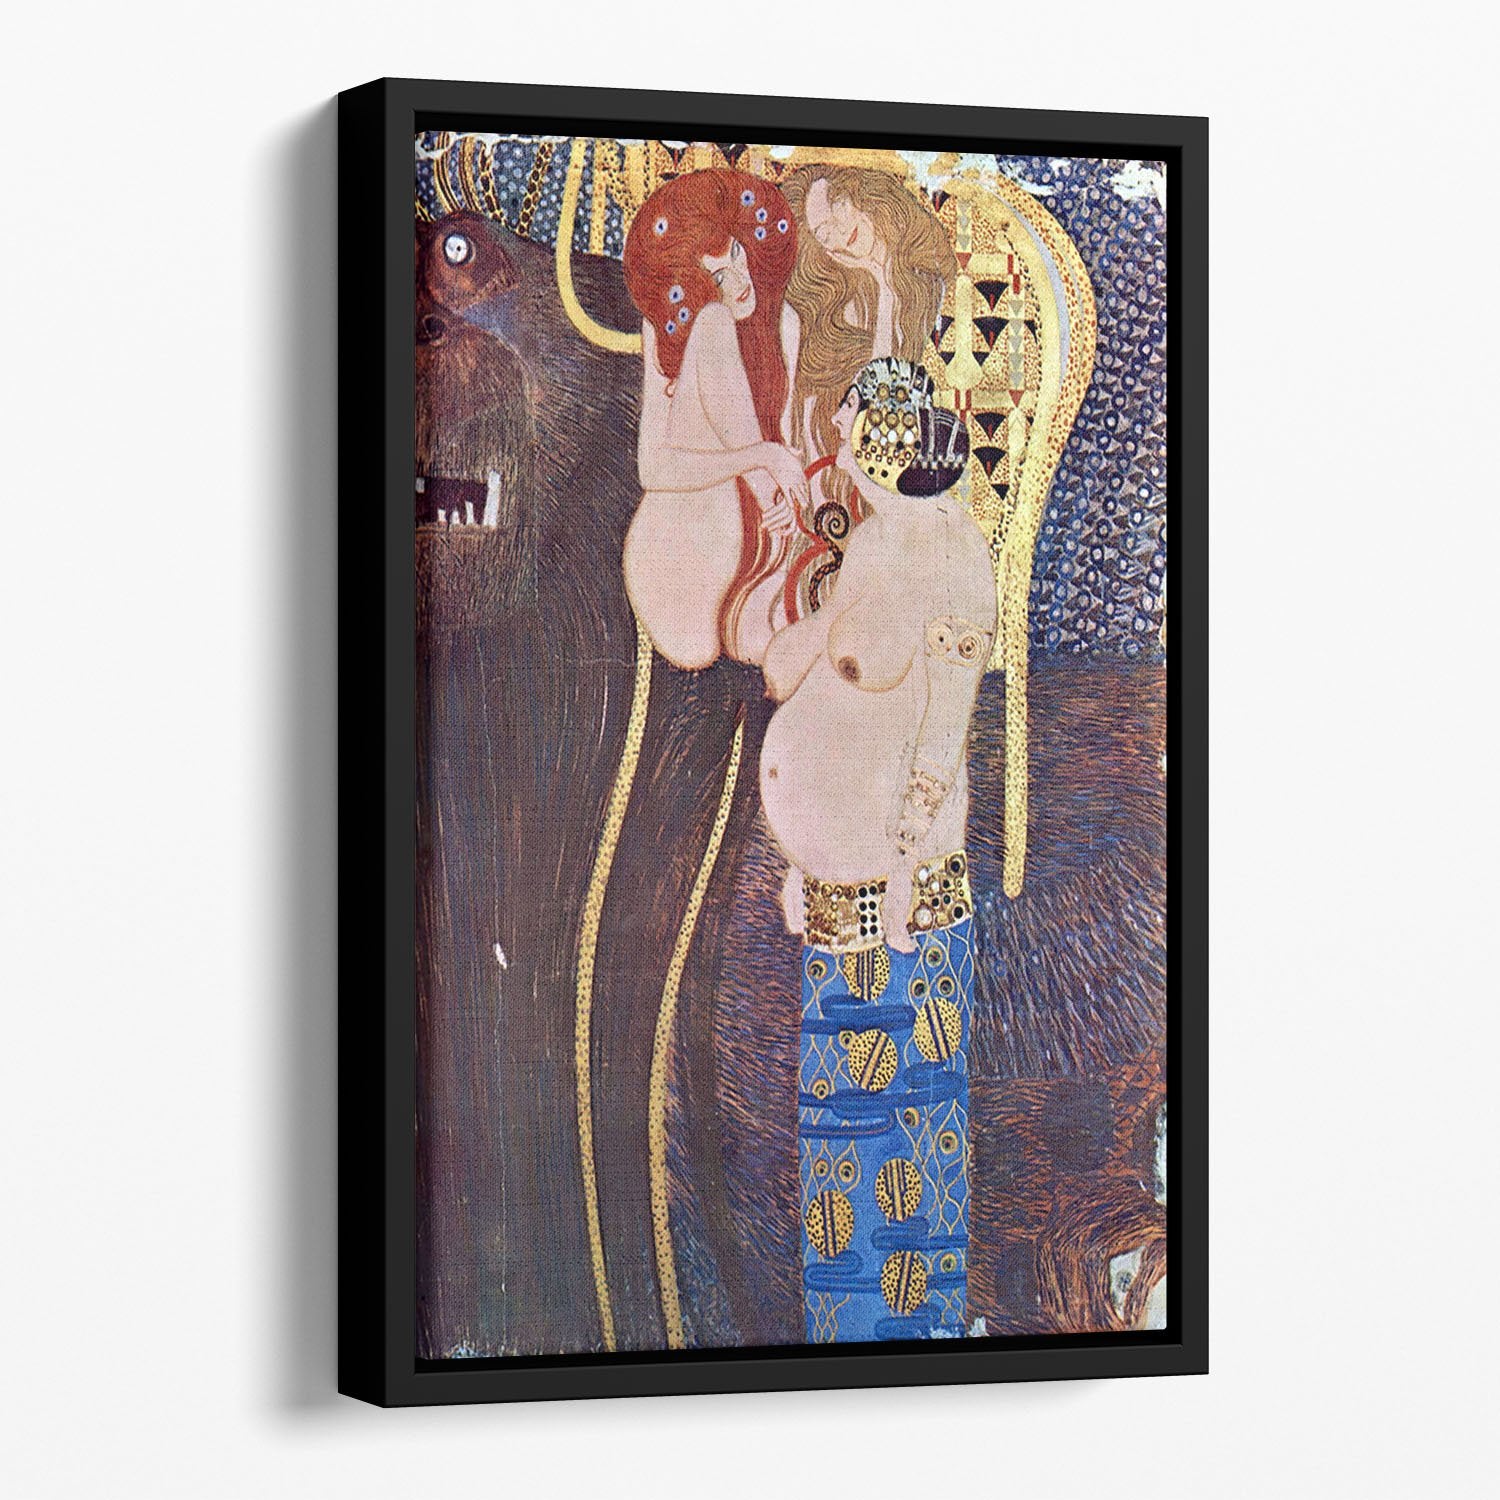 The Beethoven Freize 2 by Klimt Floating Framed Canvas